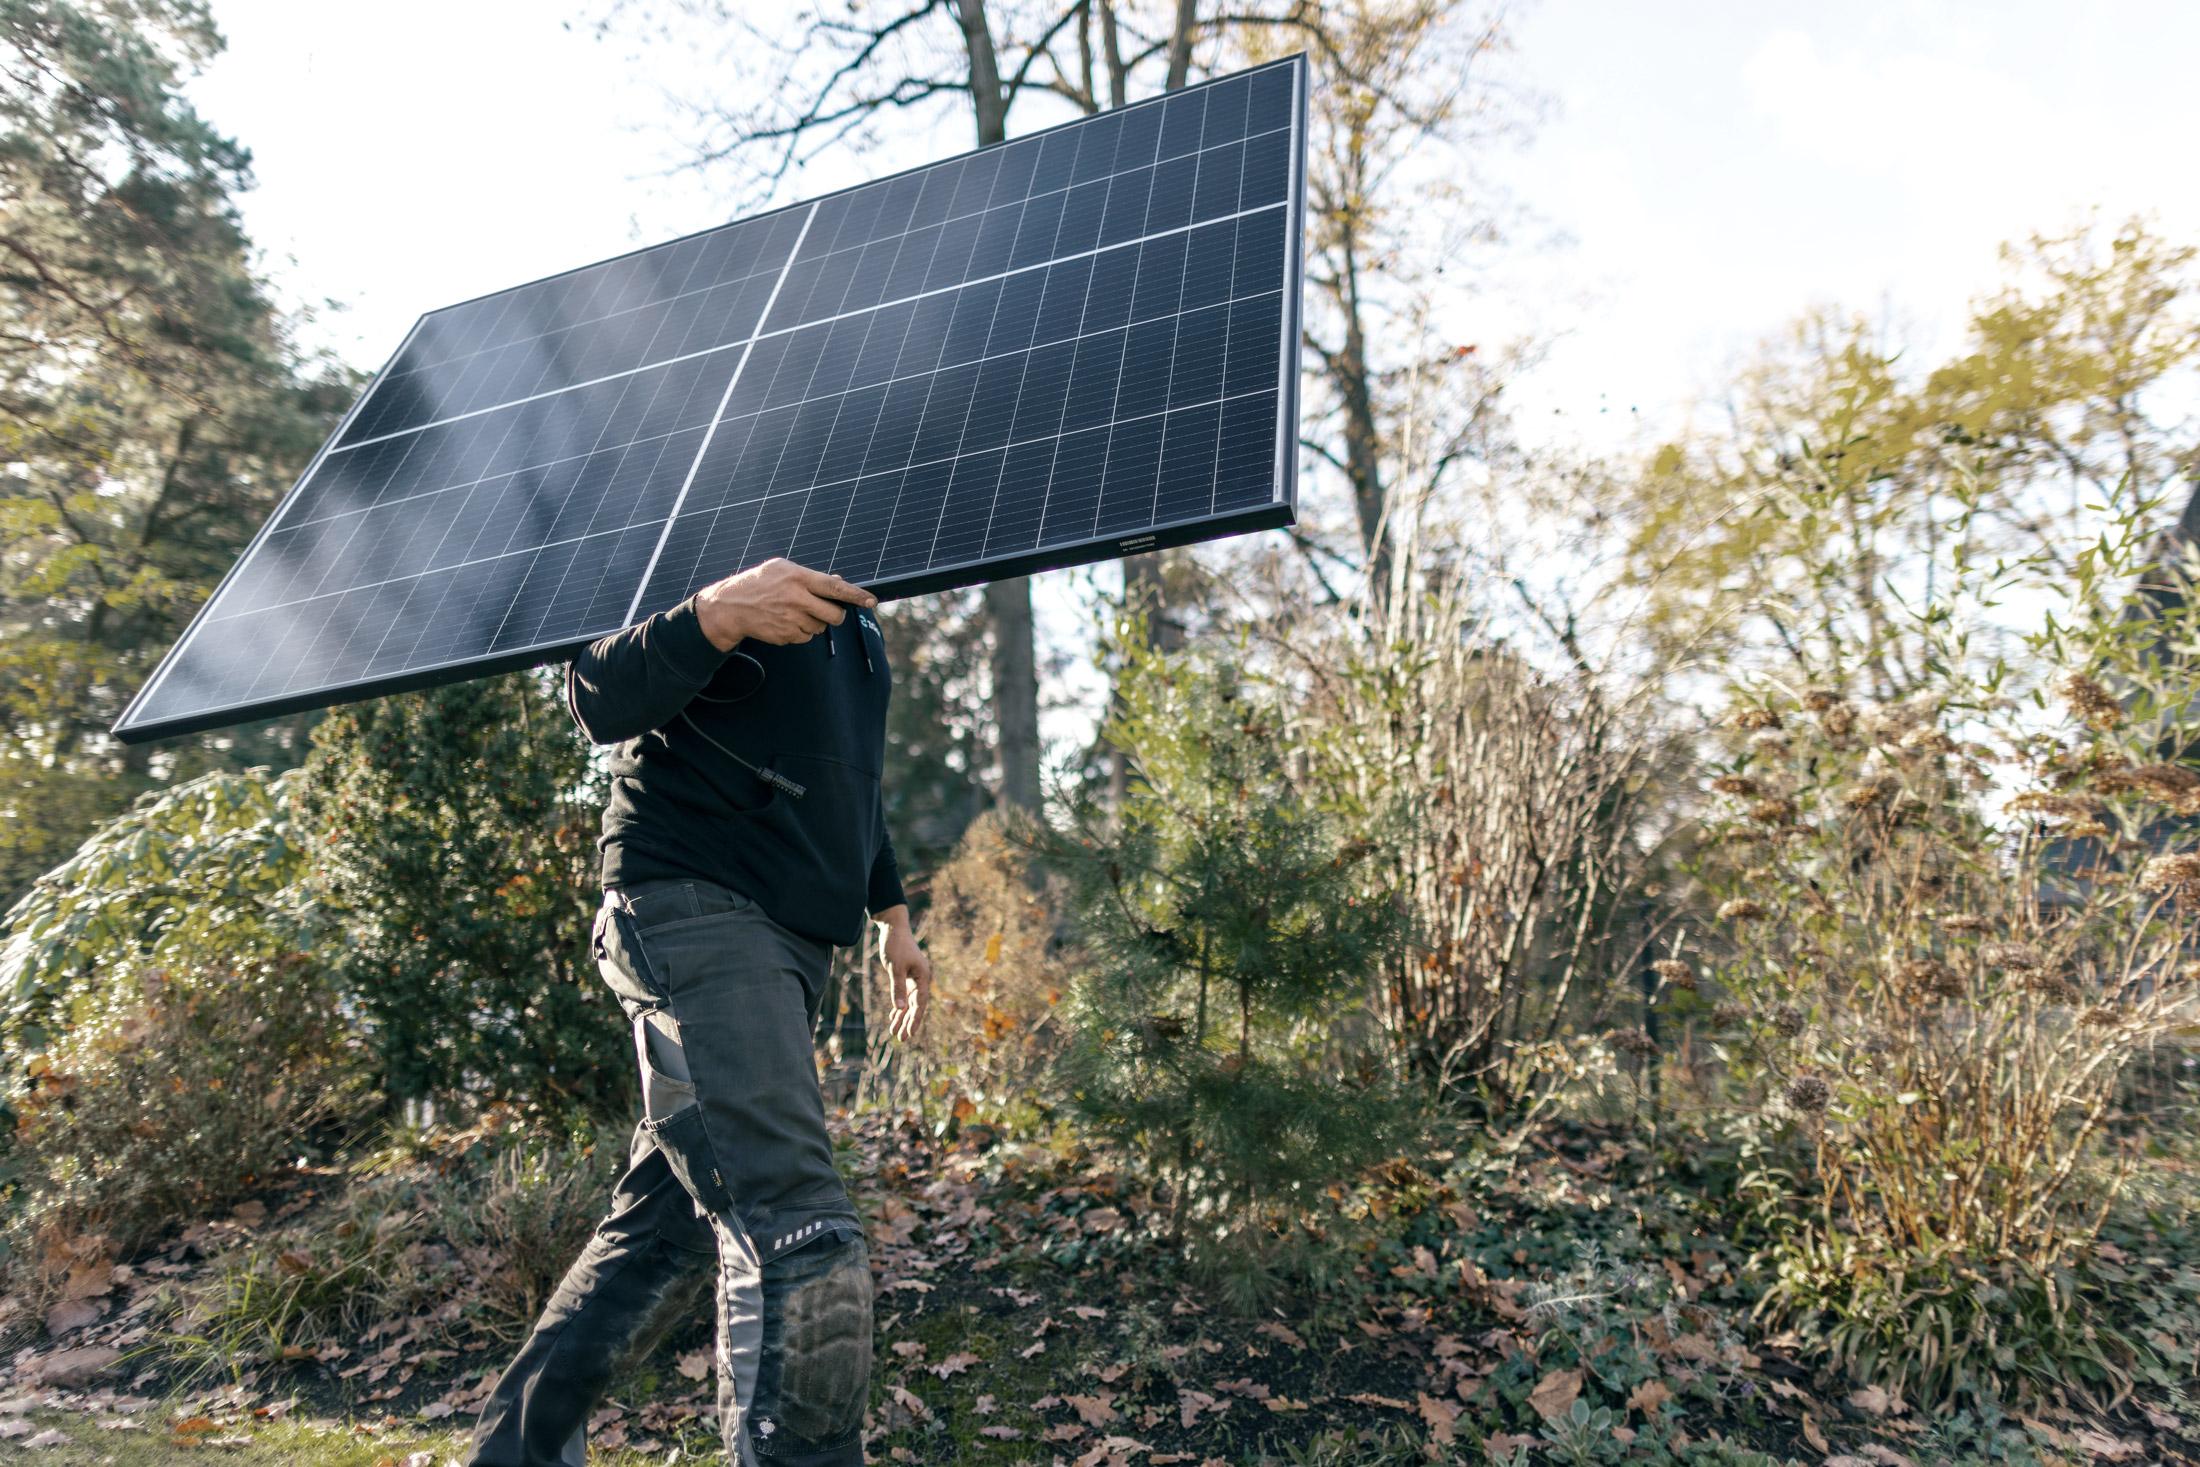 Installateur trägt Solarmodul – Langlebigkeit von günstigen Solarmodulen